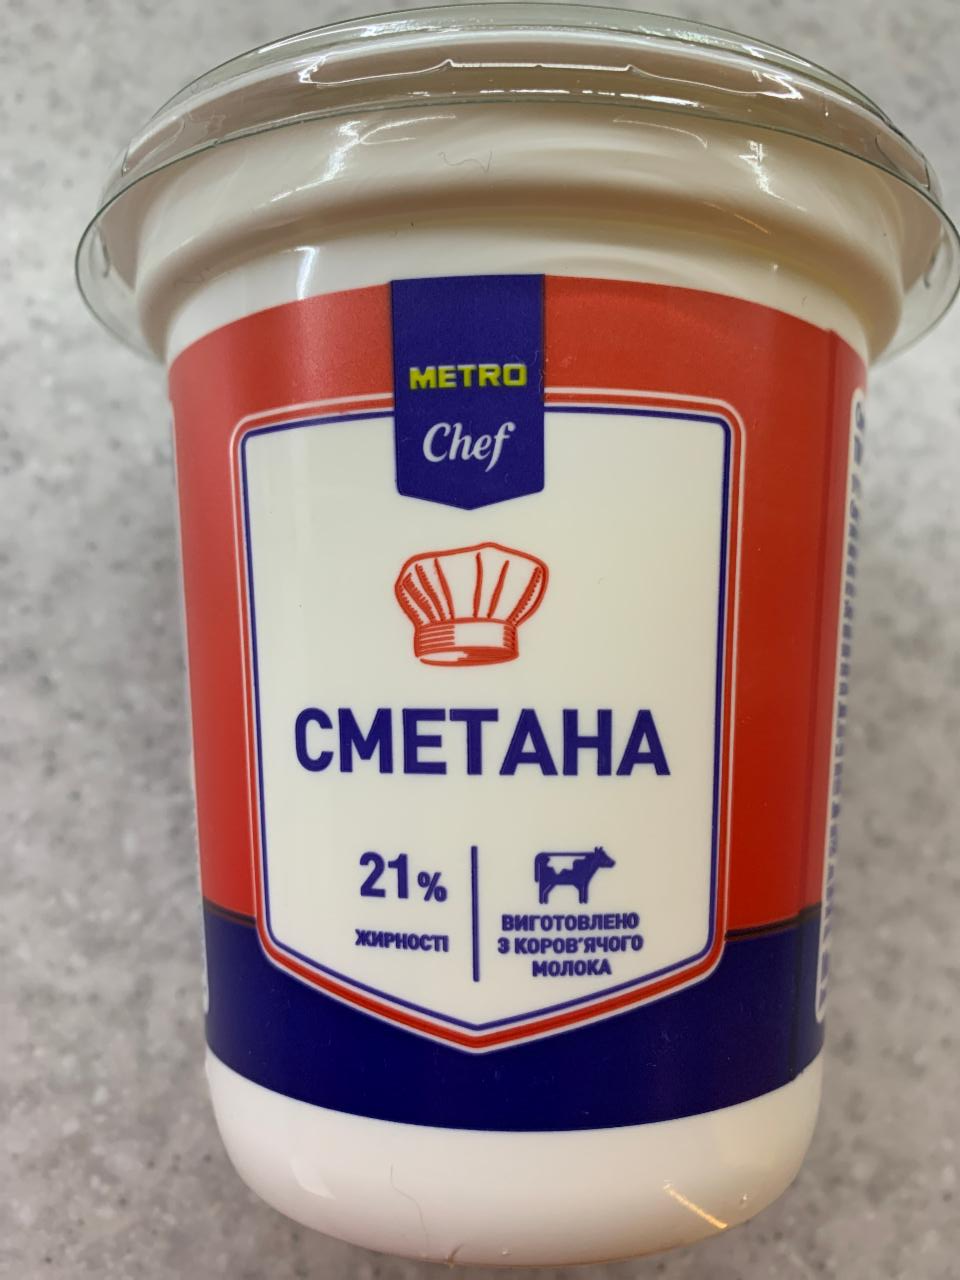 Фото - Сметана 21% Метро Шеф Metro Chef